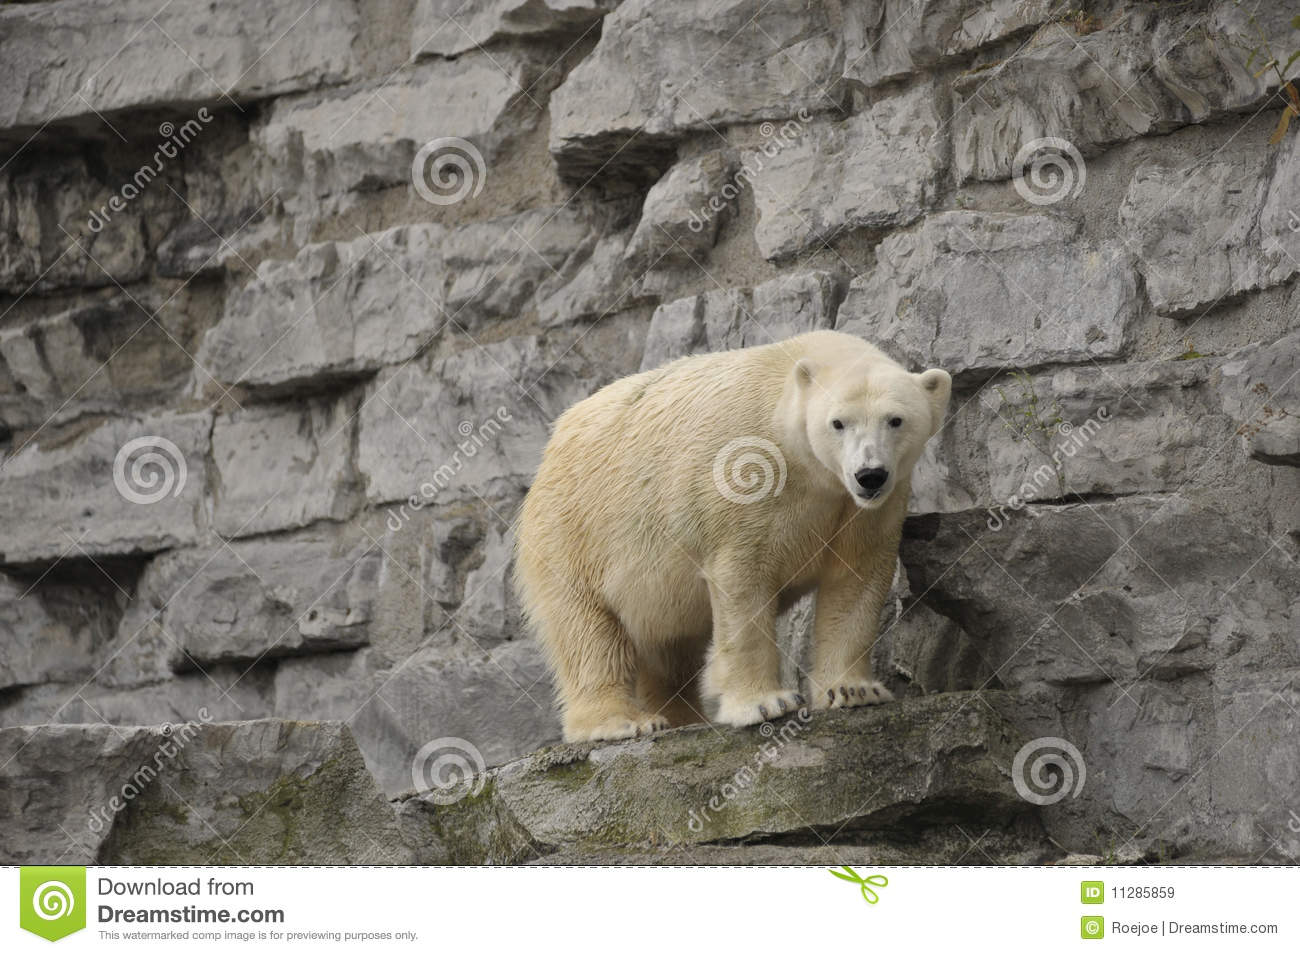 Polar Bear On Rock Ledge Royalty Free Stock Images   Image  11285859